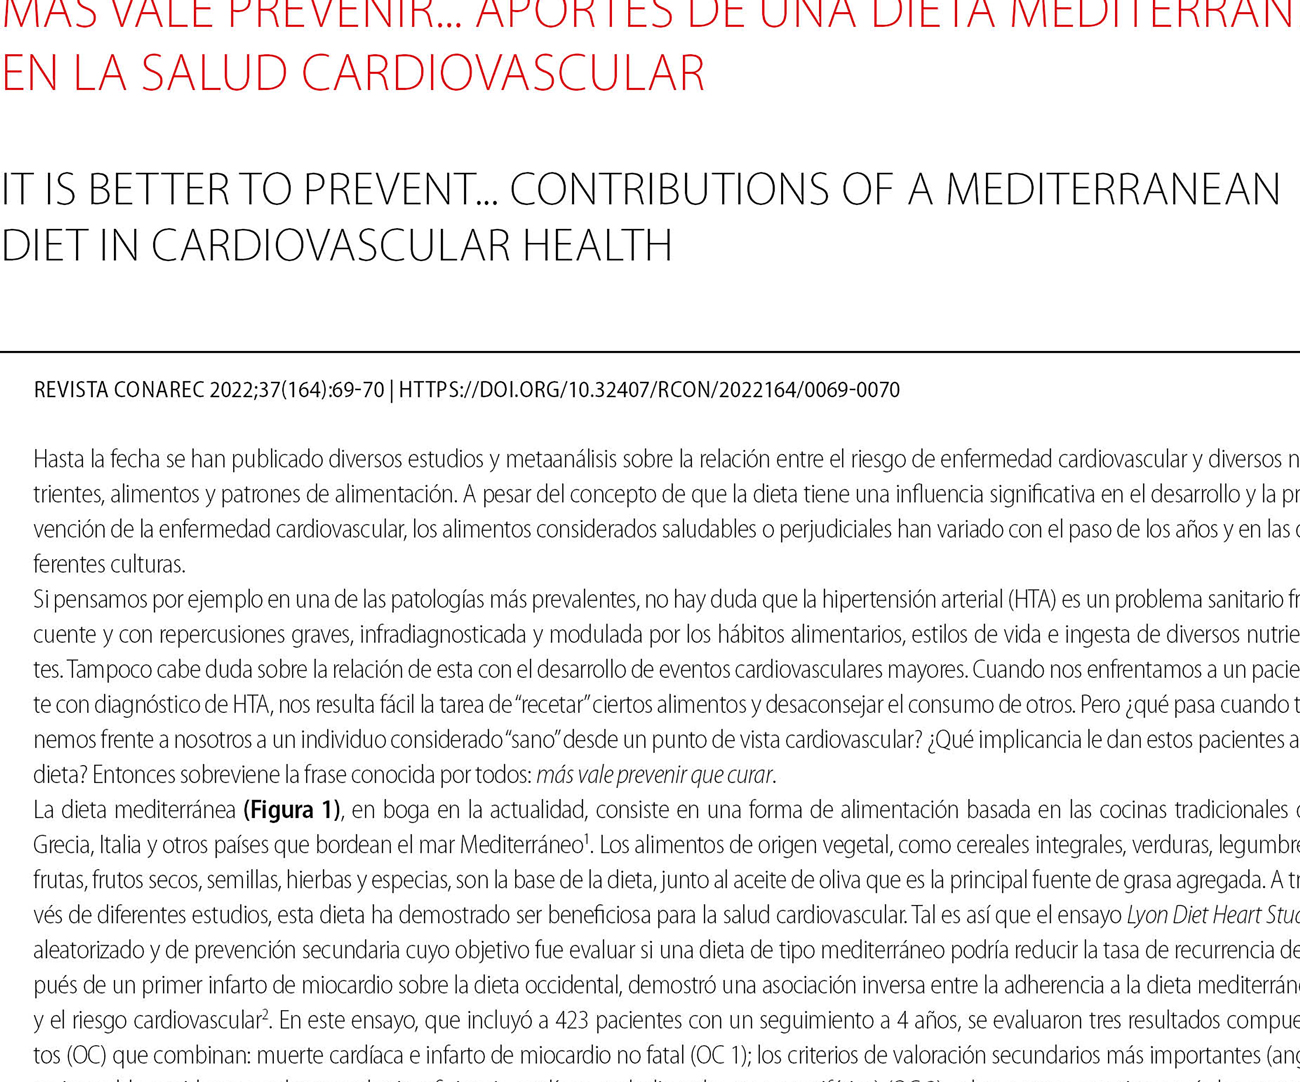 Más vale prevenir... aportes de una dieta mediterránea en la salud cardiovascular